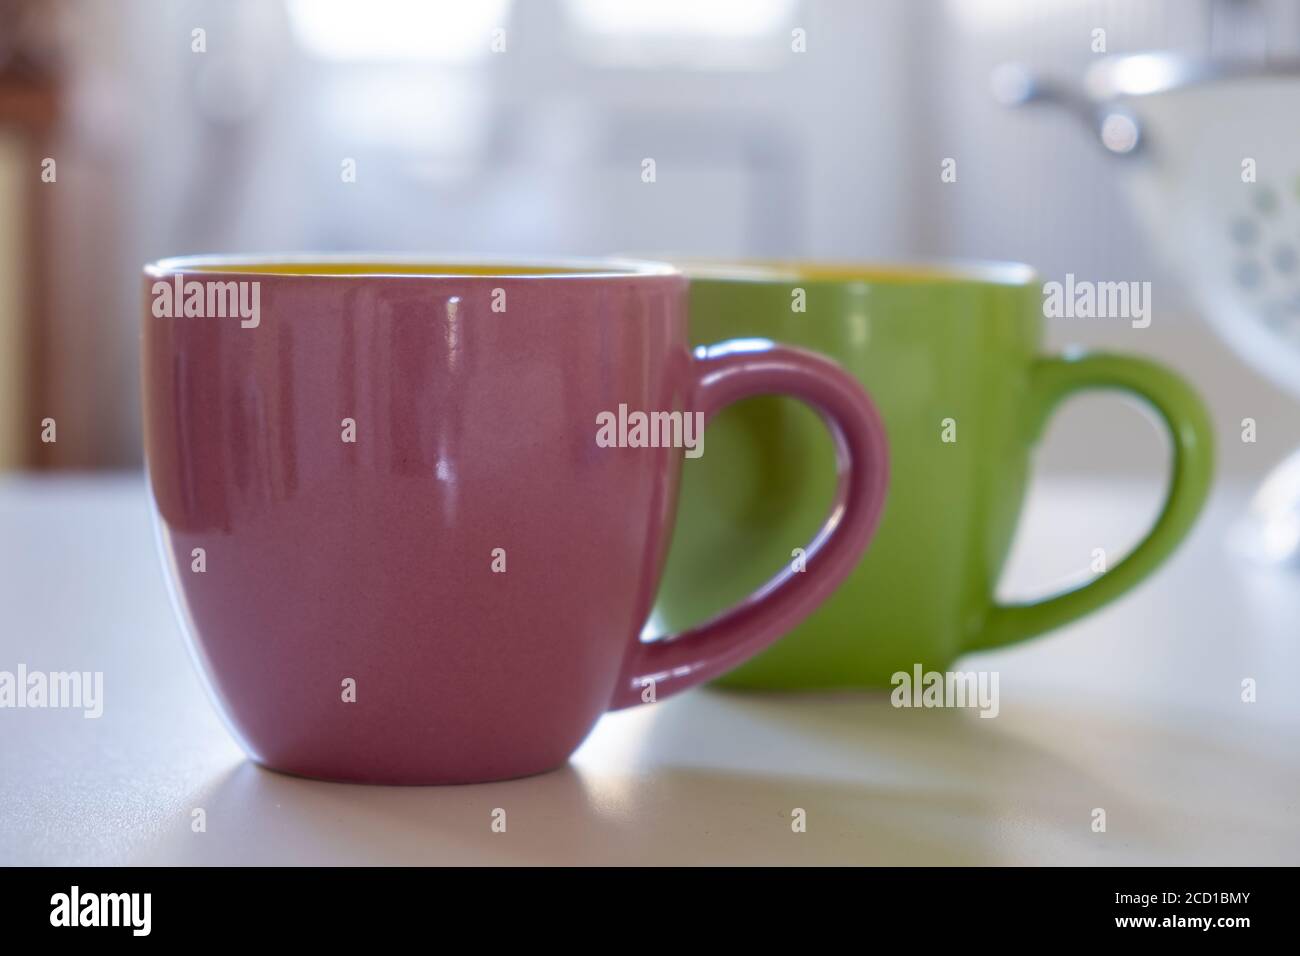 Ilustración del juego de tazas de café representación 3d de un juego de café